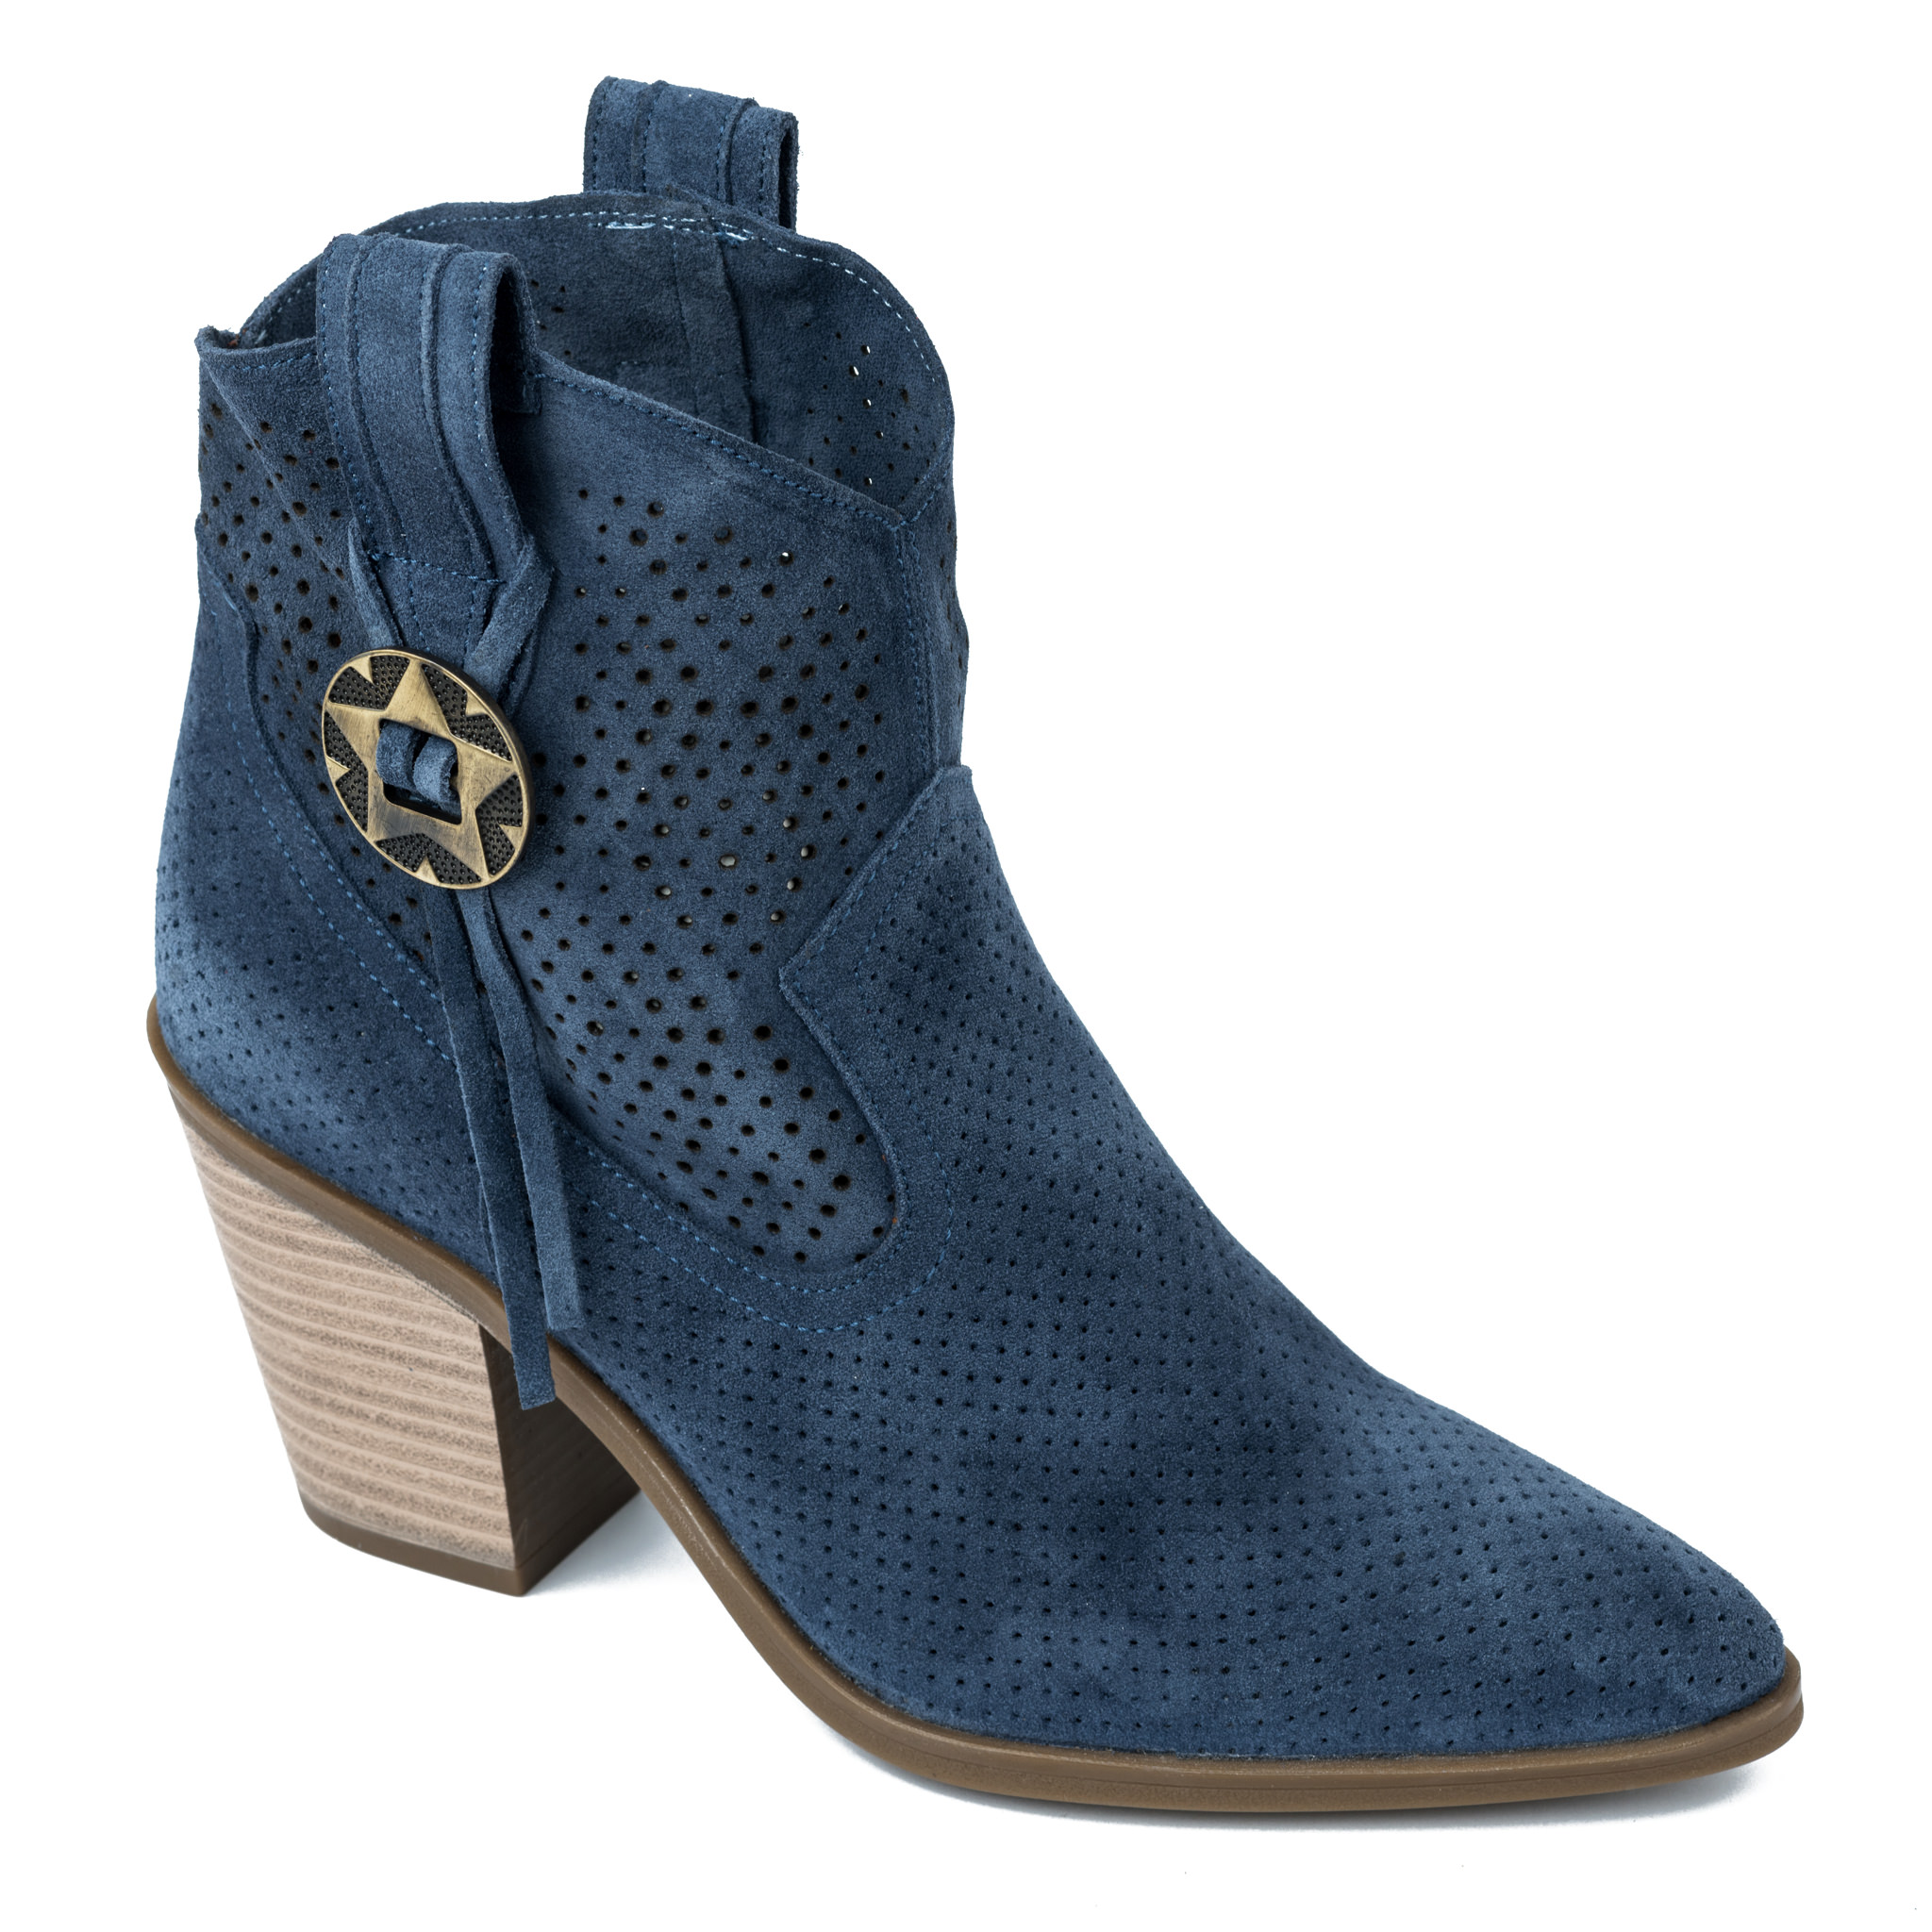 Summer boots A185 - BLUE